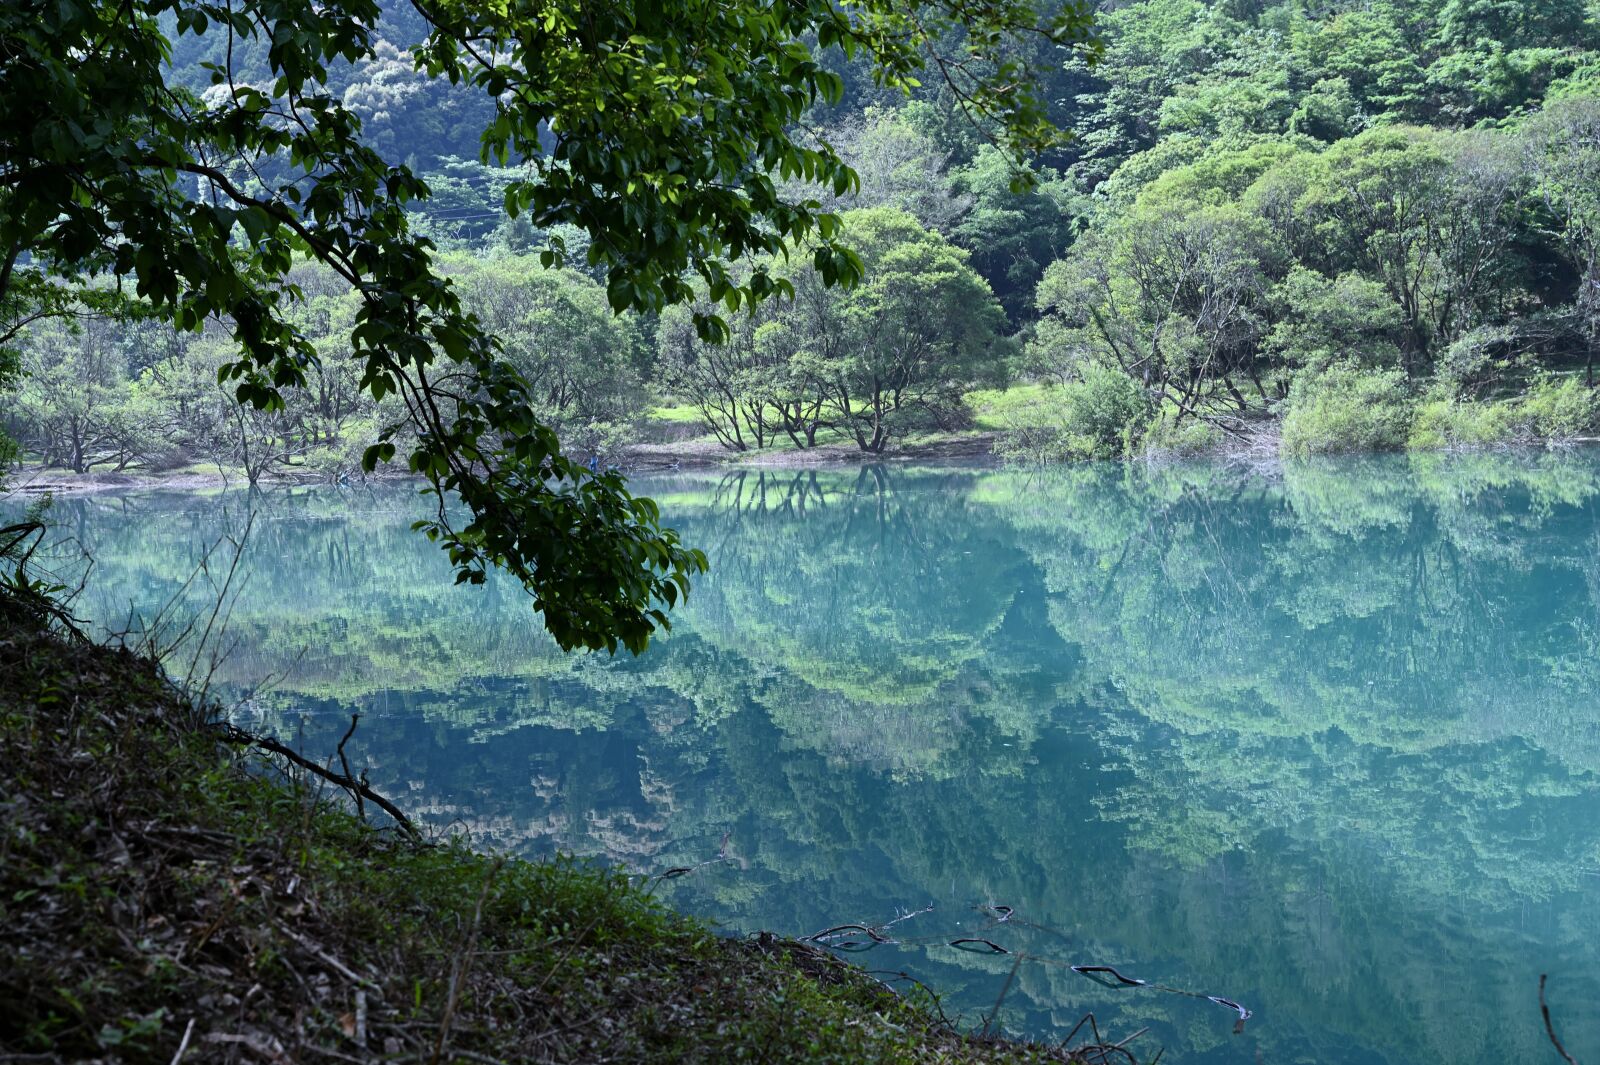 Nikon Nikkor Z 24-70mm F4 S sample photo. Lake, reflection, natural photography